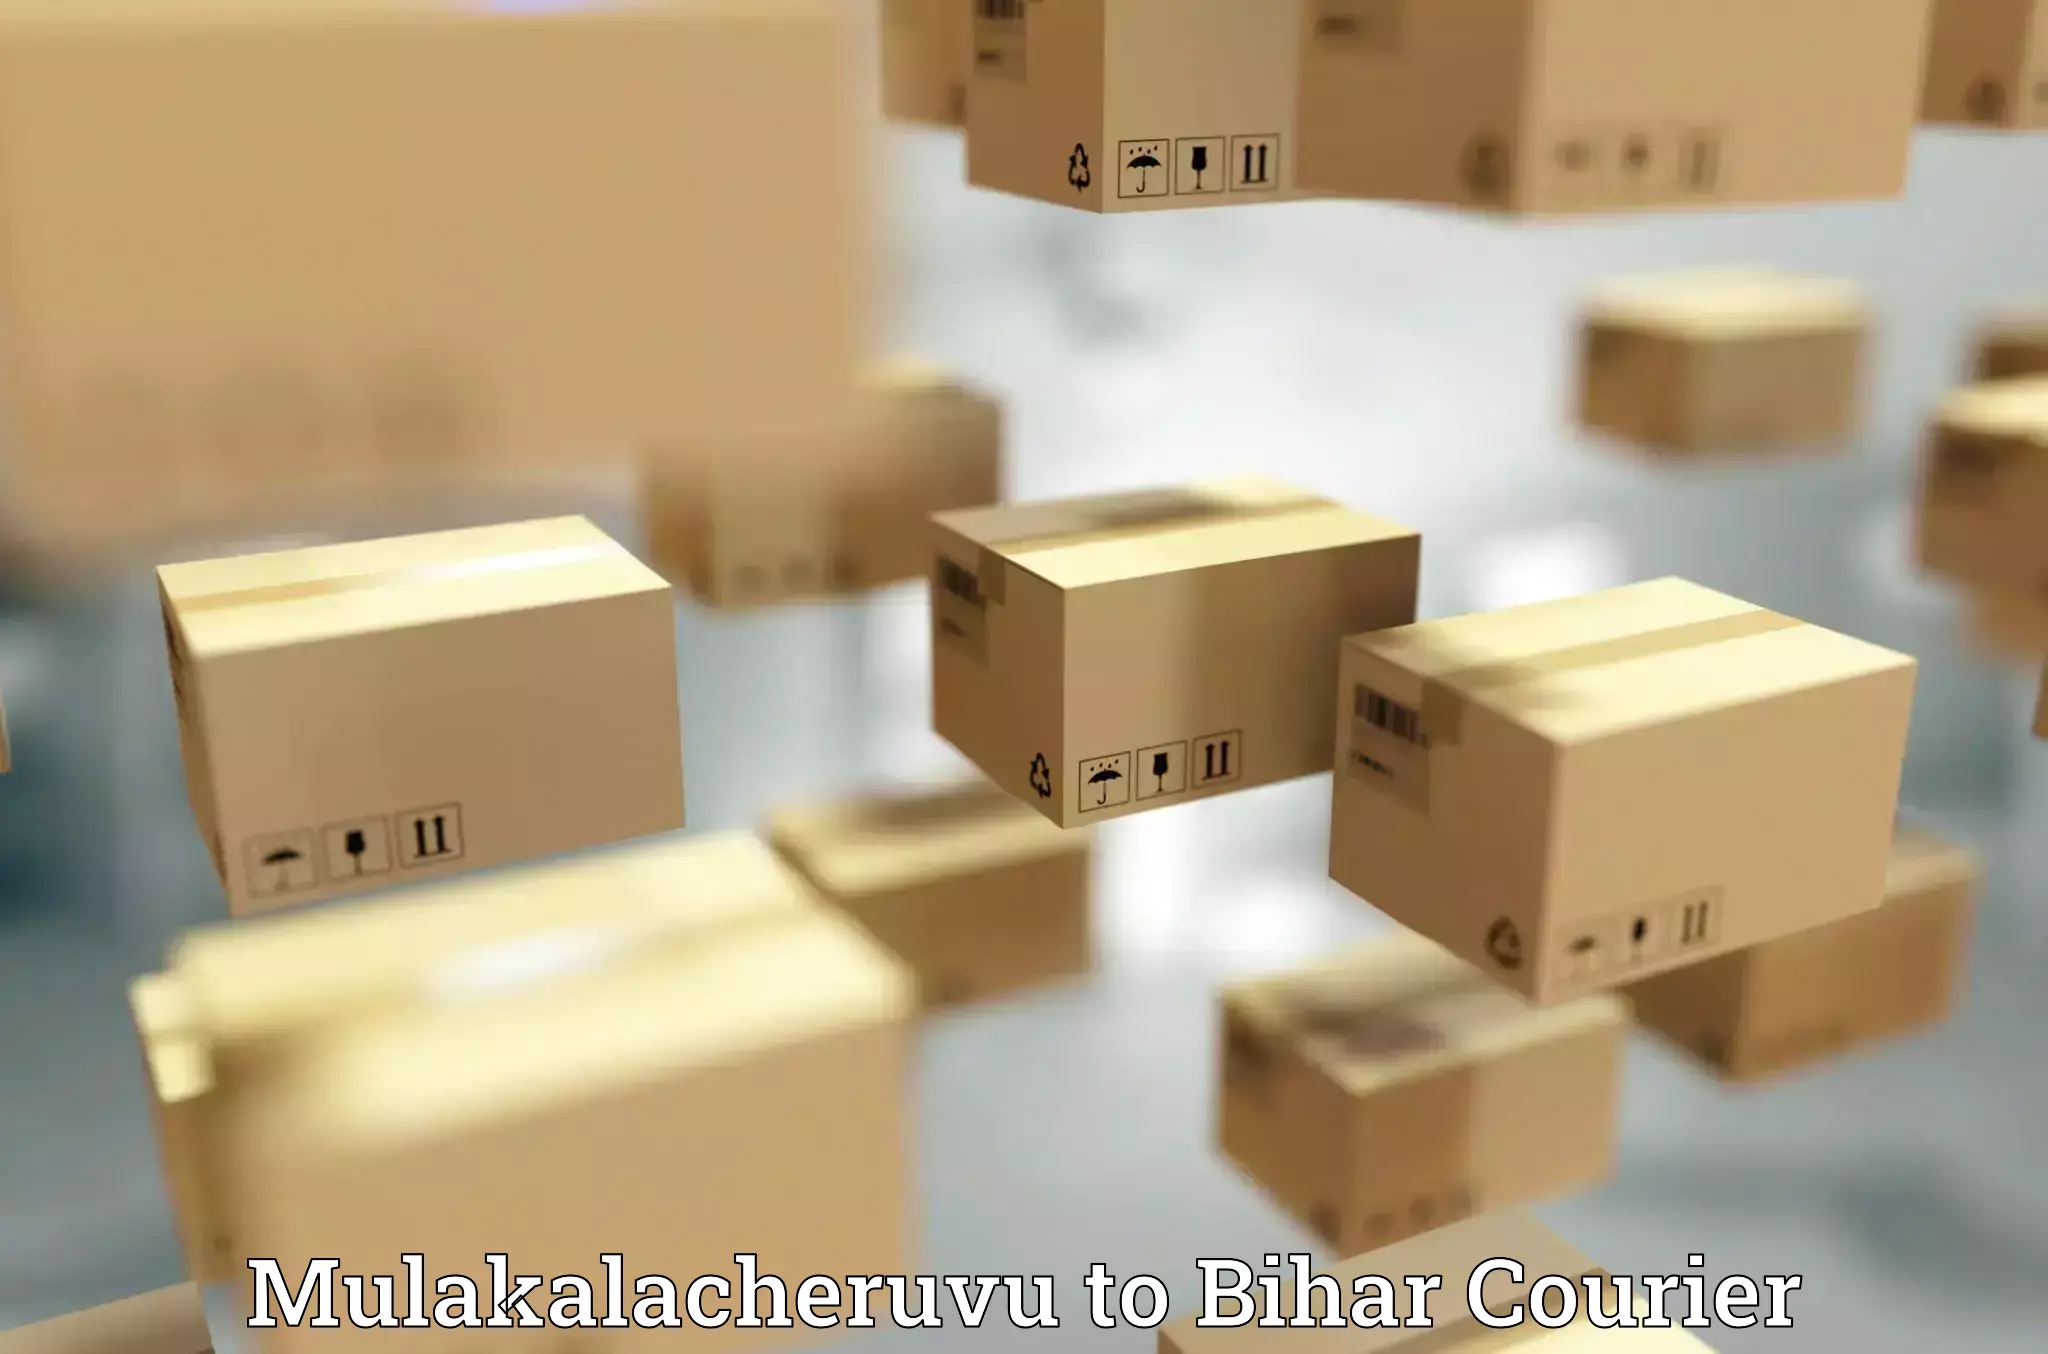 Full-service courier options Mulakalacheruvu to Chandi Nalanda